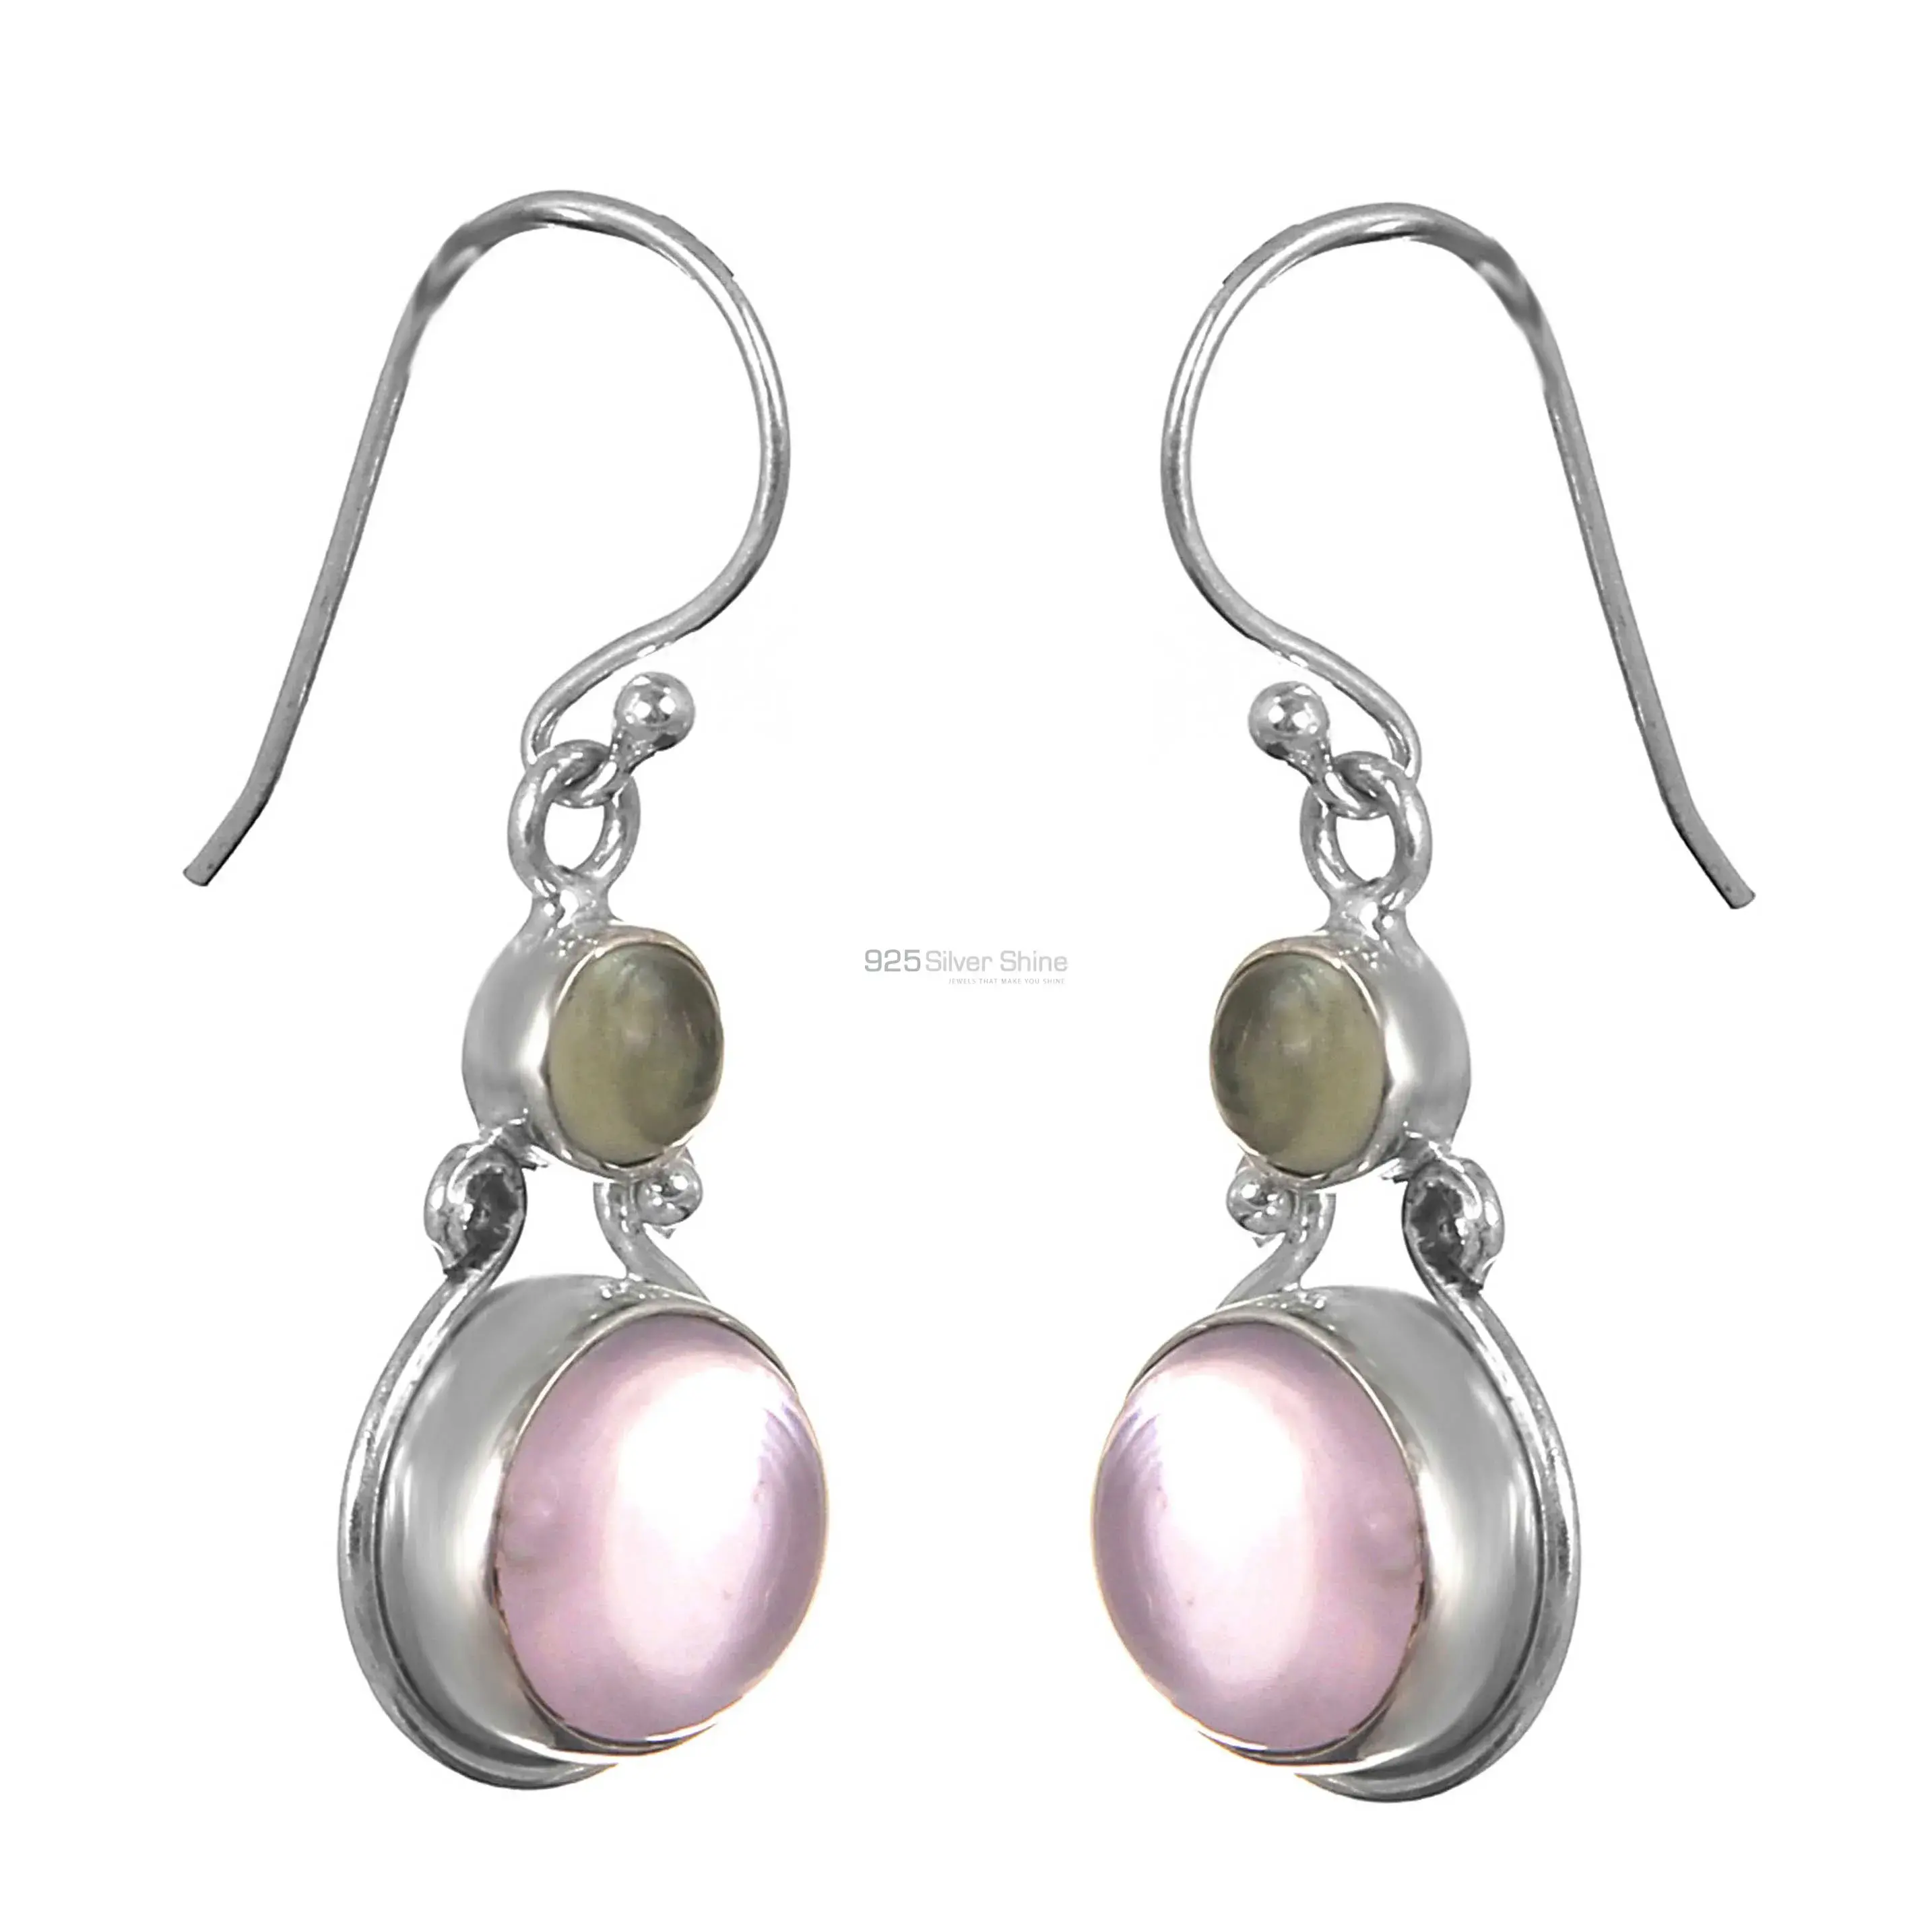 Rose Quartz Gemstone Earrings In Sterling Silver Jewelry 925SE169_0